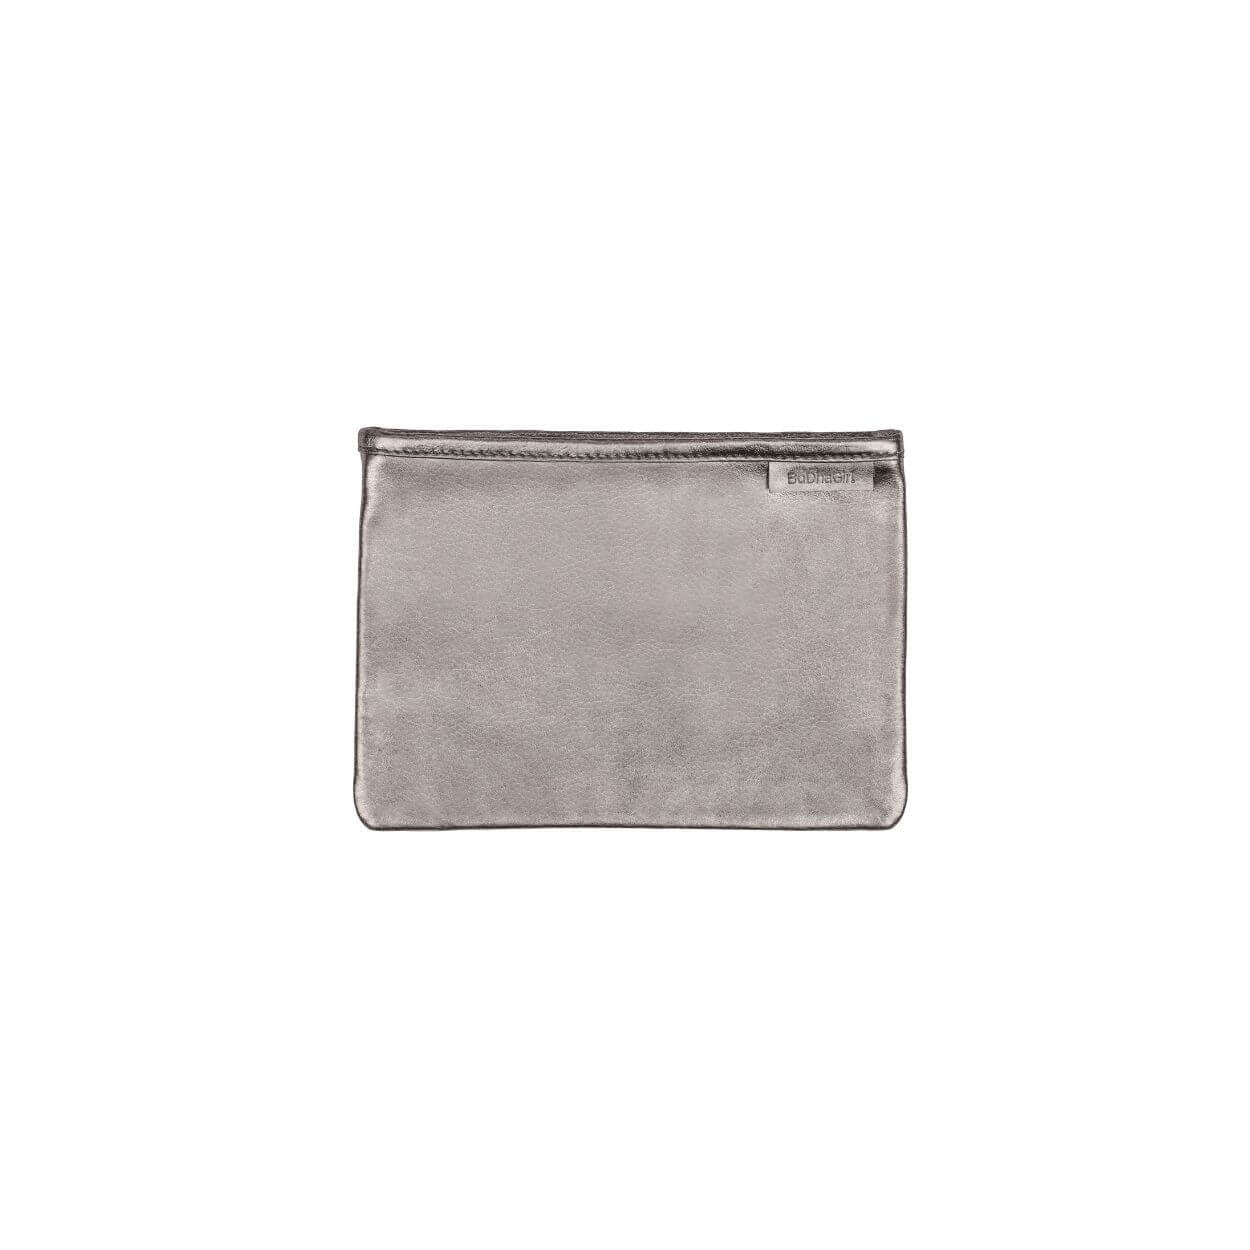 Silver Leather Pochette Bag | Clutch Handbag by BuDhaGirl